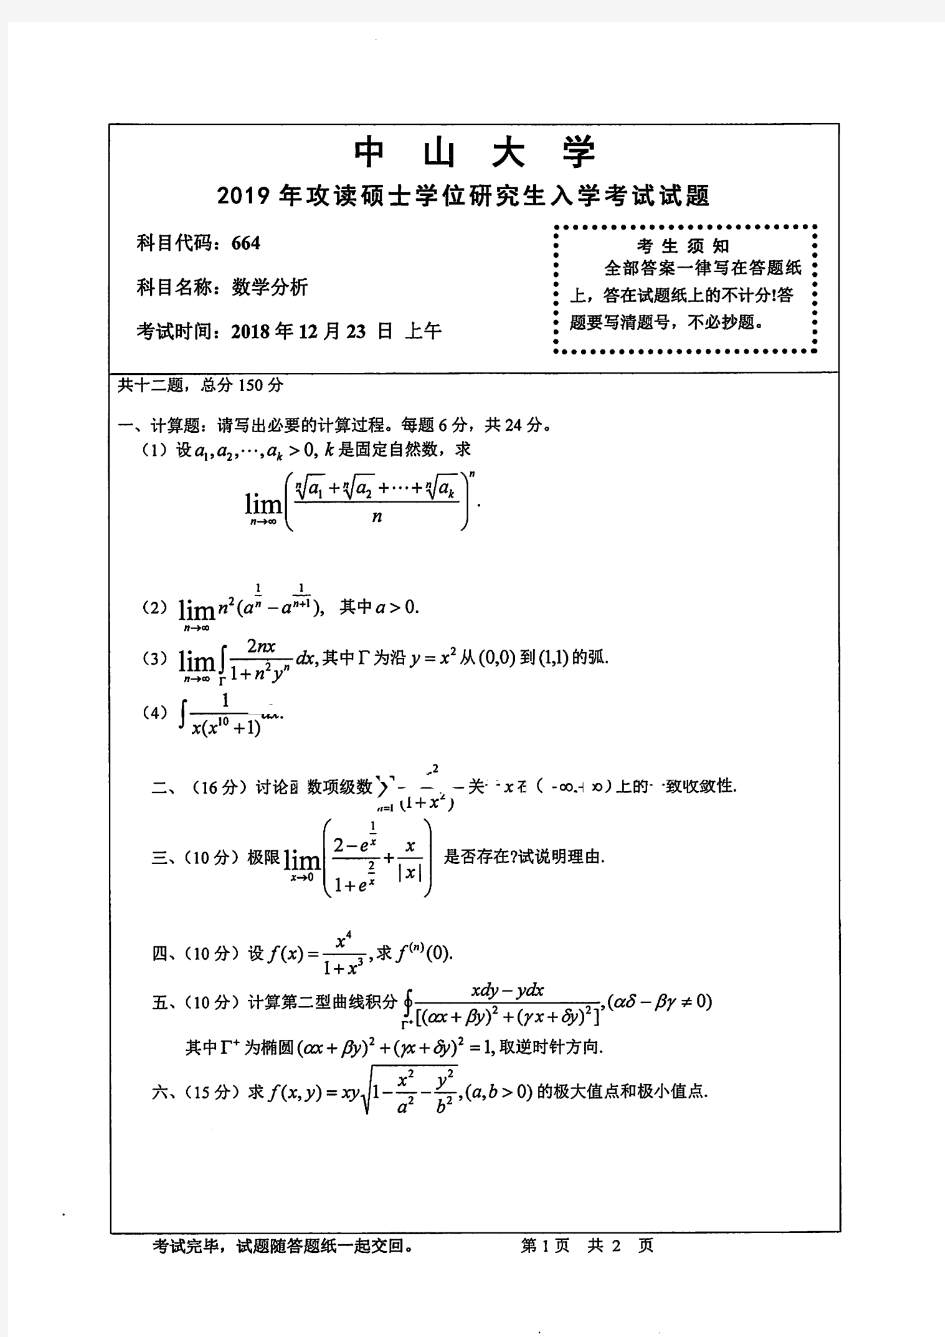 中山大学664数学分析专业课考研真题(2019年)